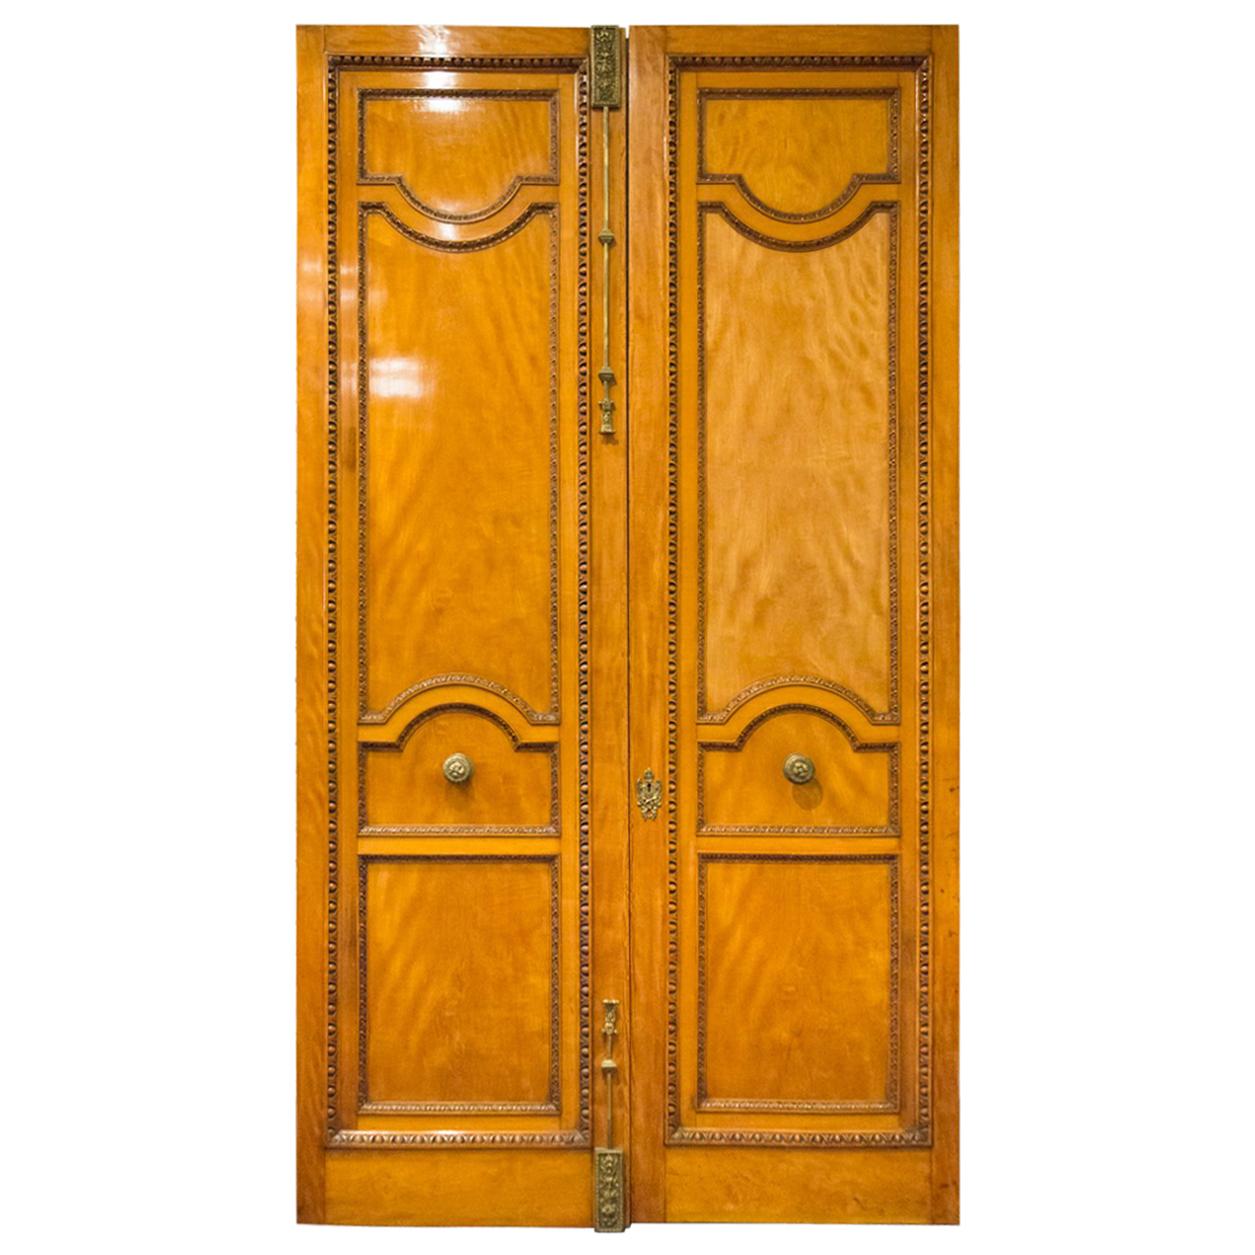 Ein imposantes Paar geschnitzter Türen aus satiniertem Holz